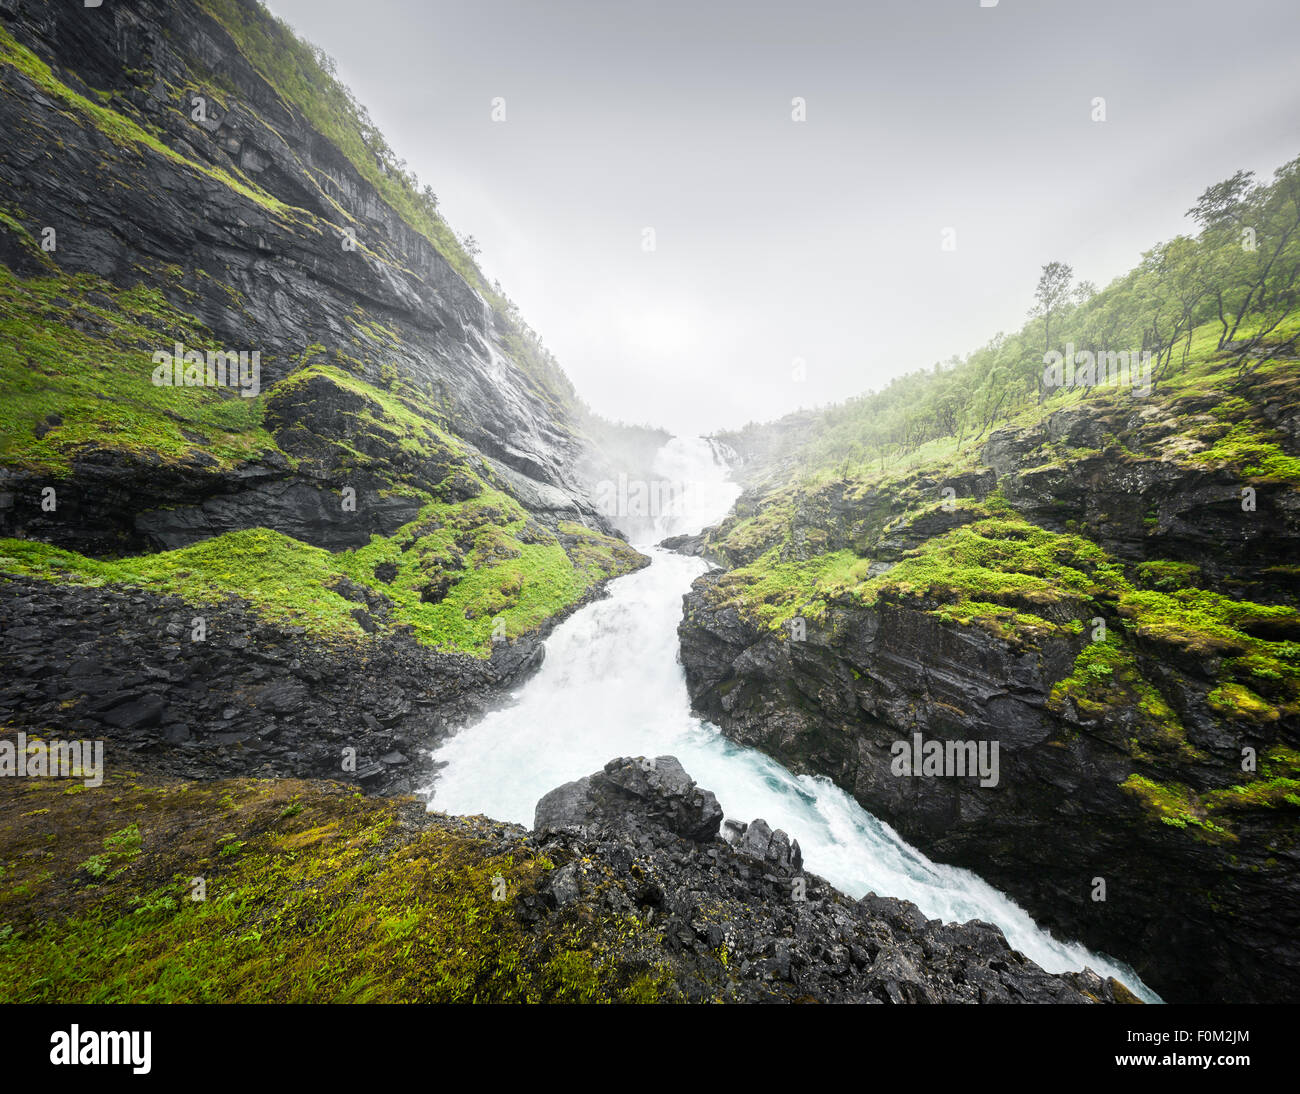 Kjosfossen waterfall, Norway Stock Photo